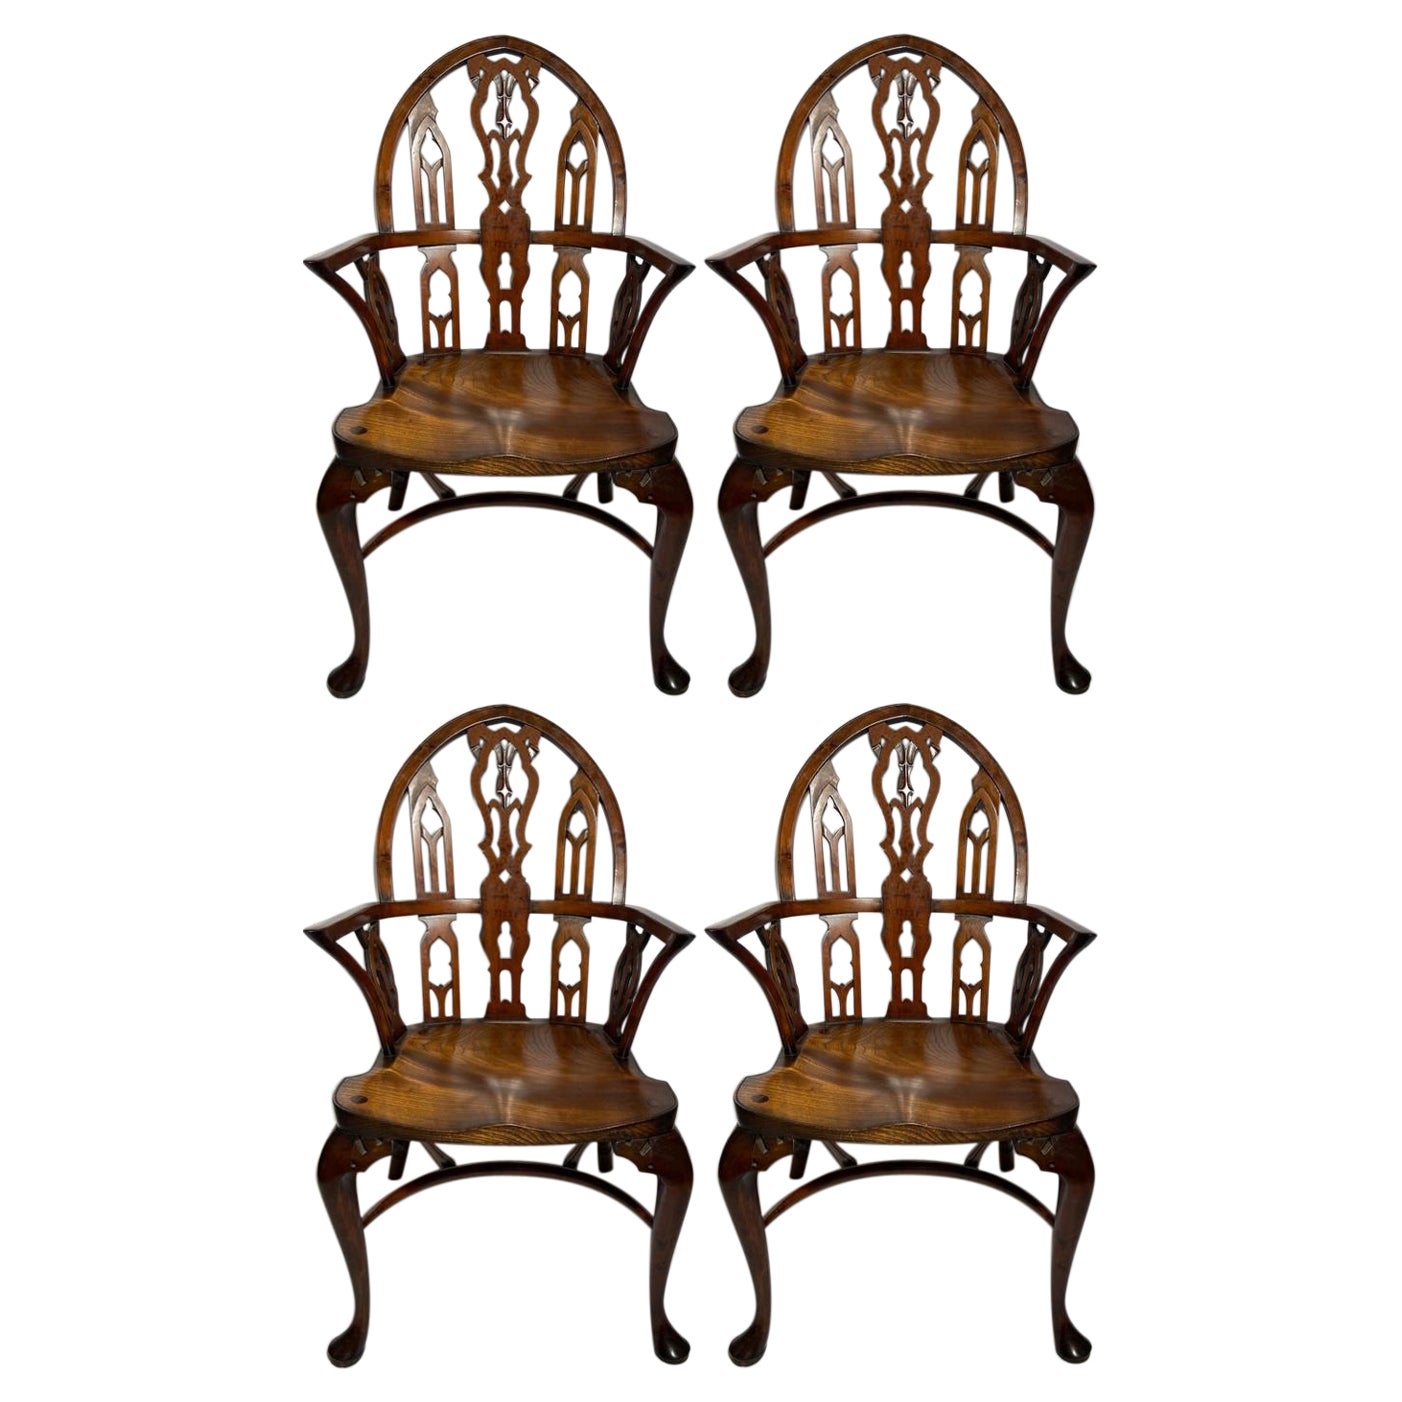 Ensemble de 4 chaises Windsor en chêne de style « Victoria and Albert » anglaises fabriquées à la main